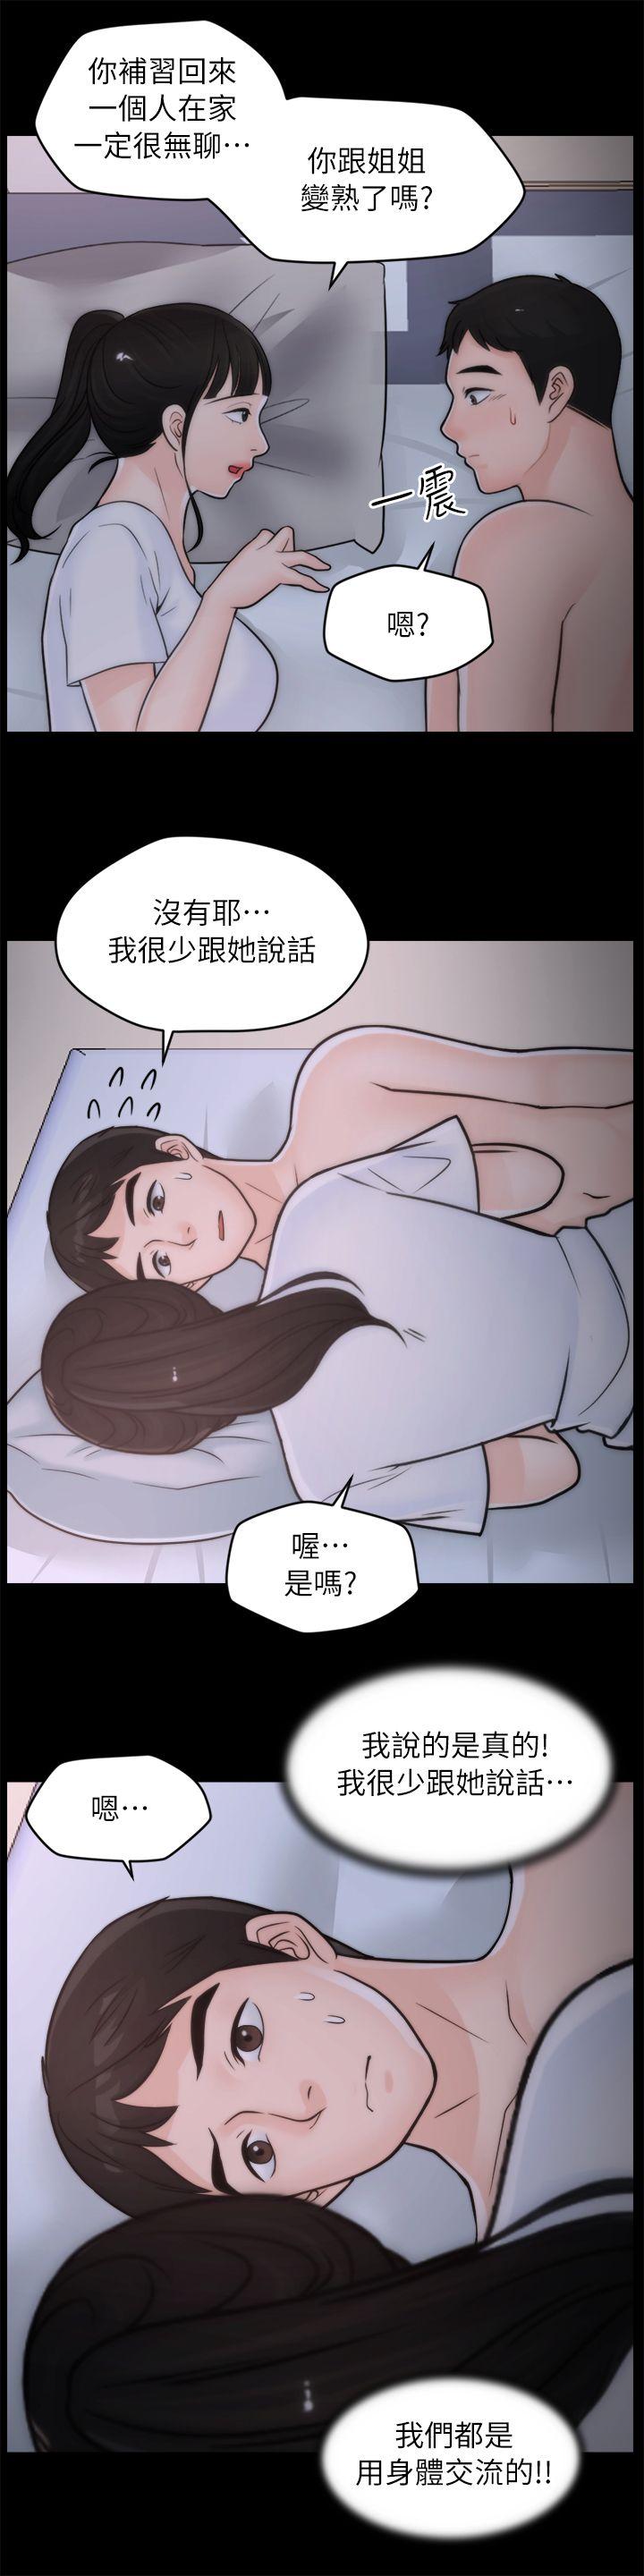 《偷偷爱》漫画 第27话-慧琳的来电